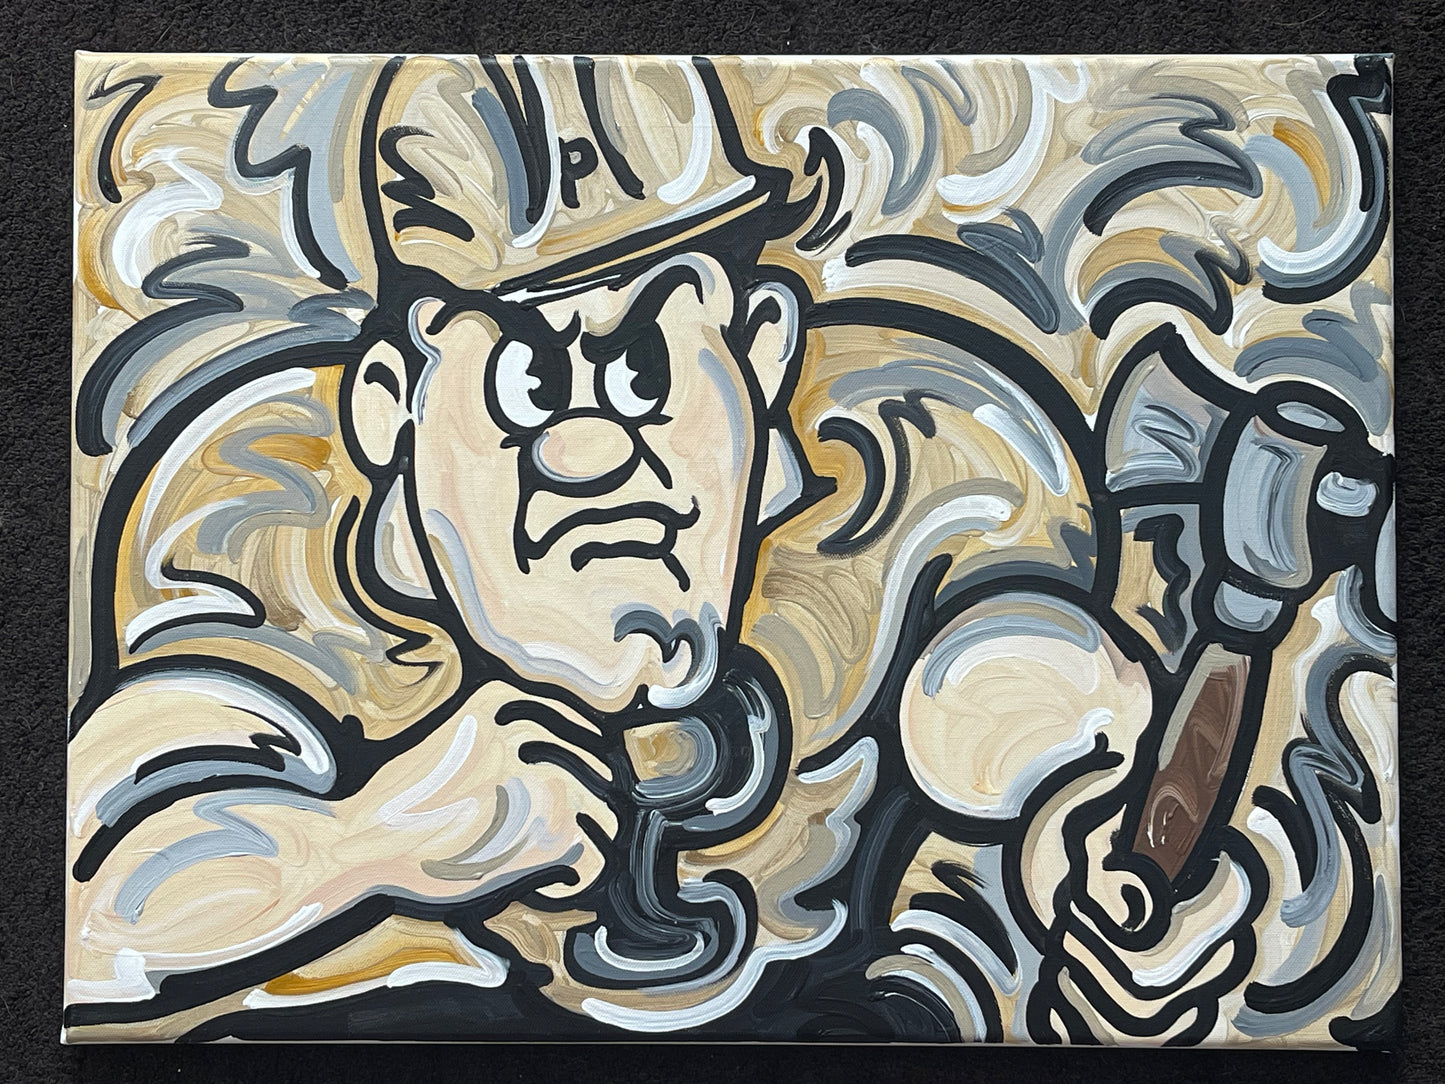 Purdue University Purdue Pete Painting by Justin Patten 24x18